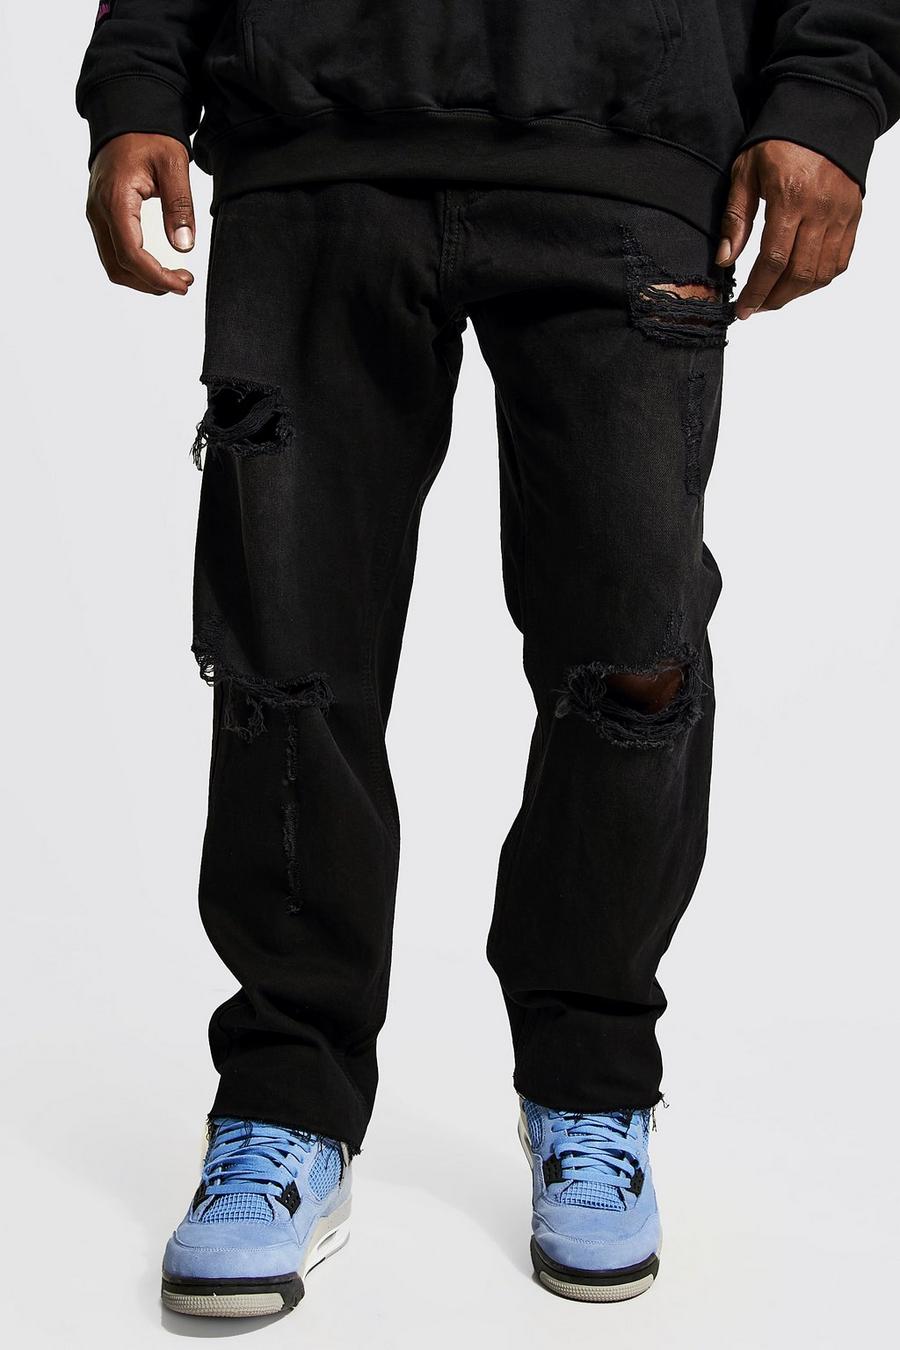 שחור דהוי ג'ינס ripped בגזרה צרה עם קרעים במכפלת, מידות גדולות